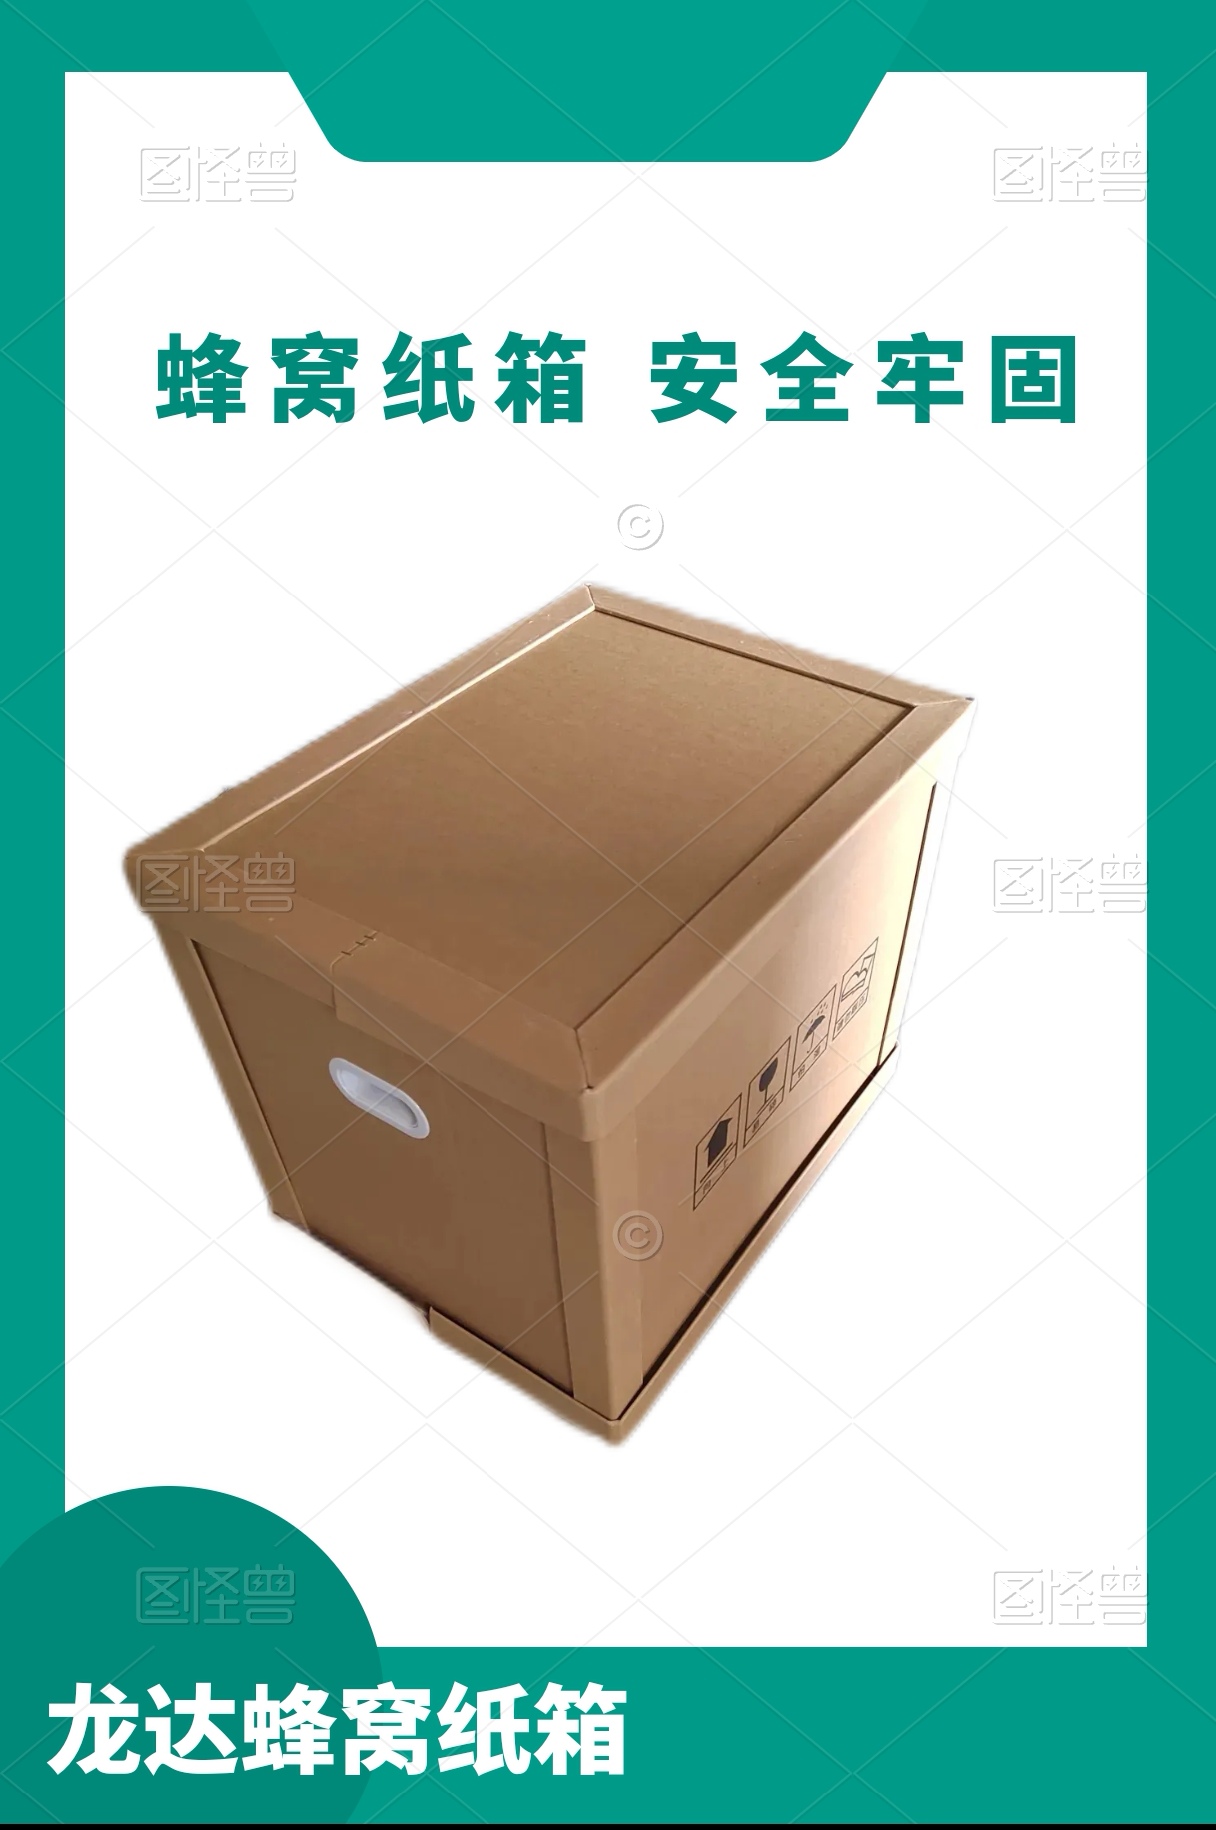 龙达出口纸箱 机械设备包装箱 免熏蒸包装箱 定制各种规格